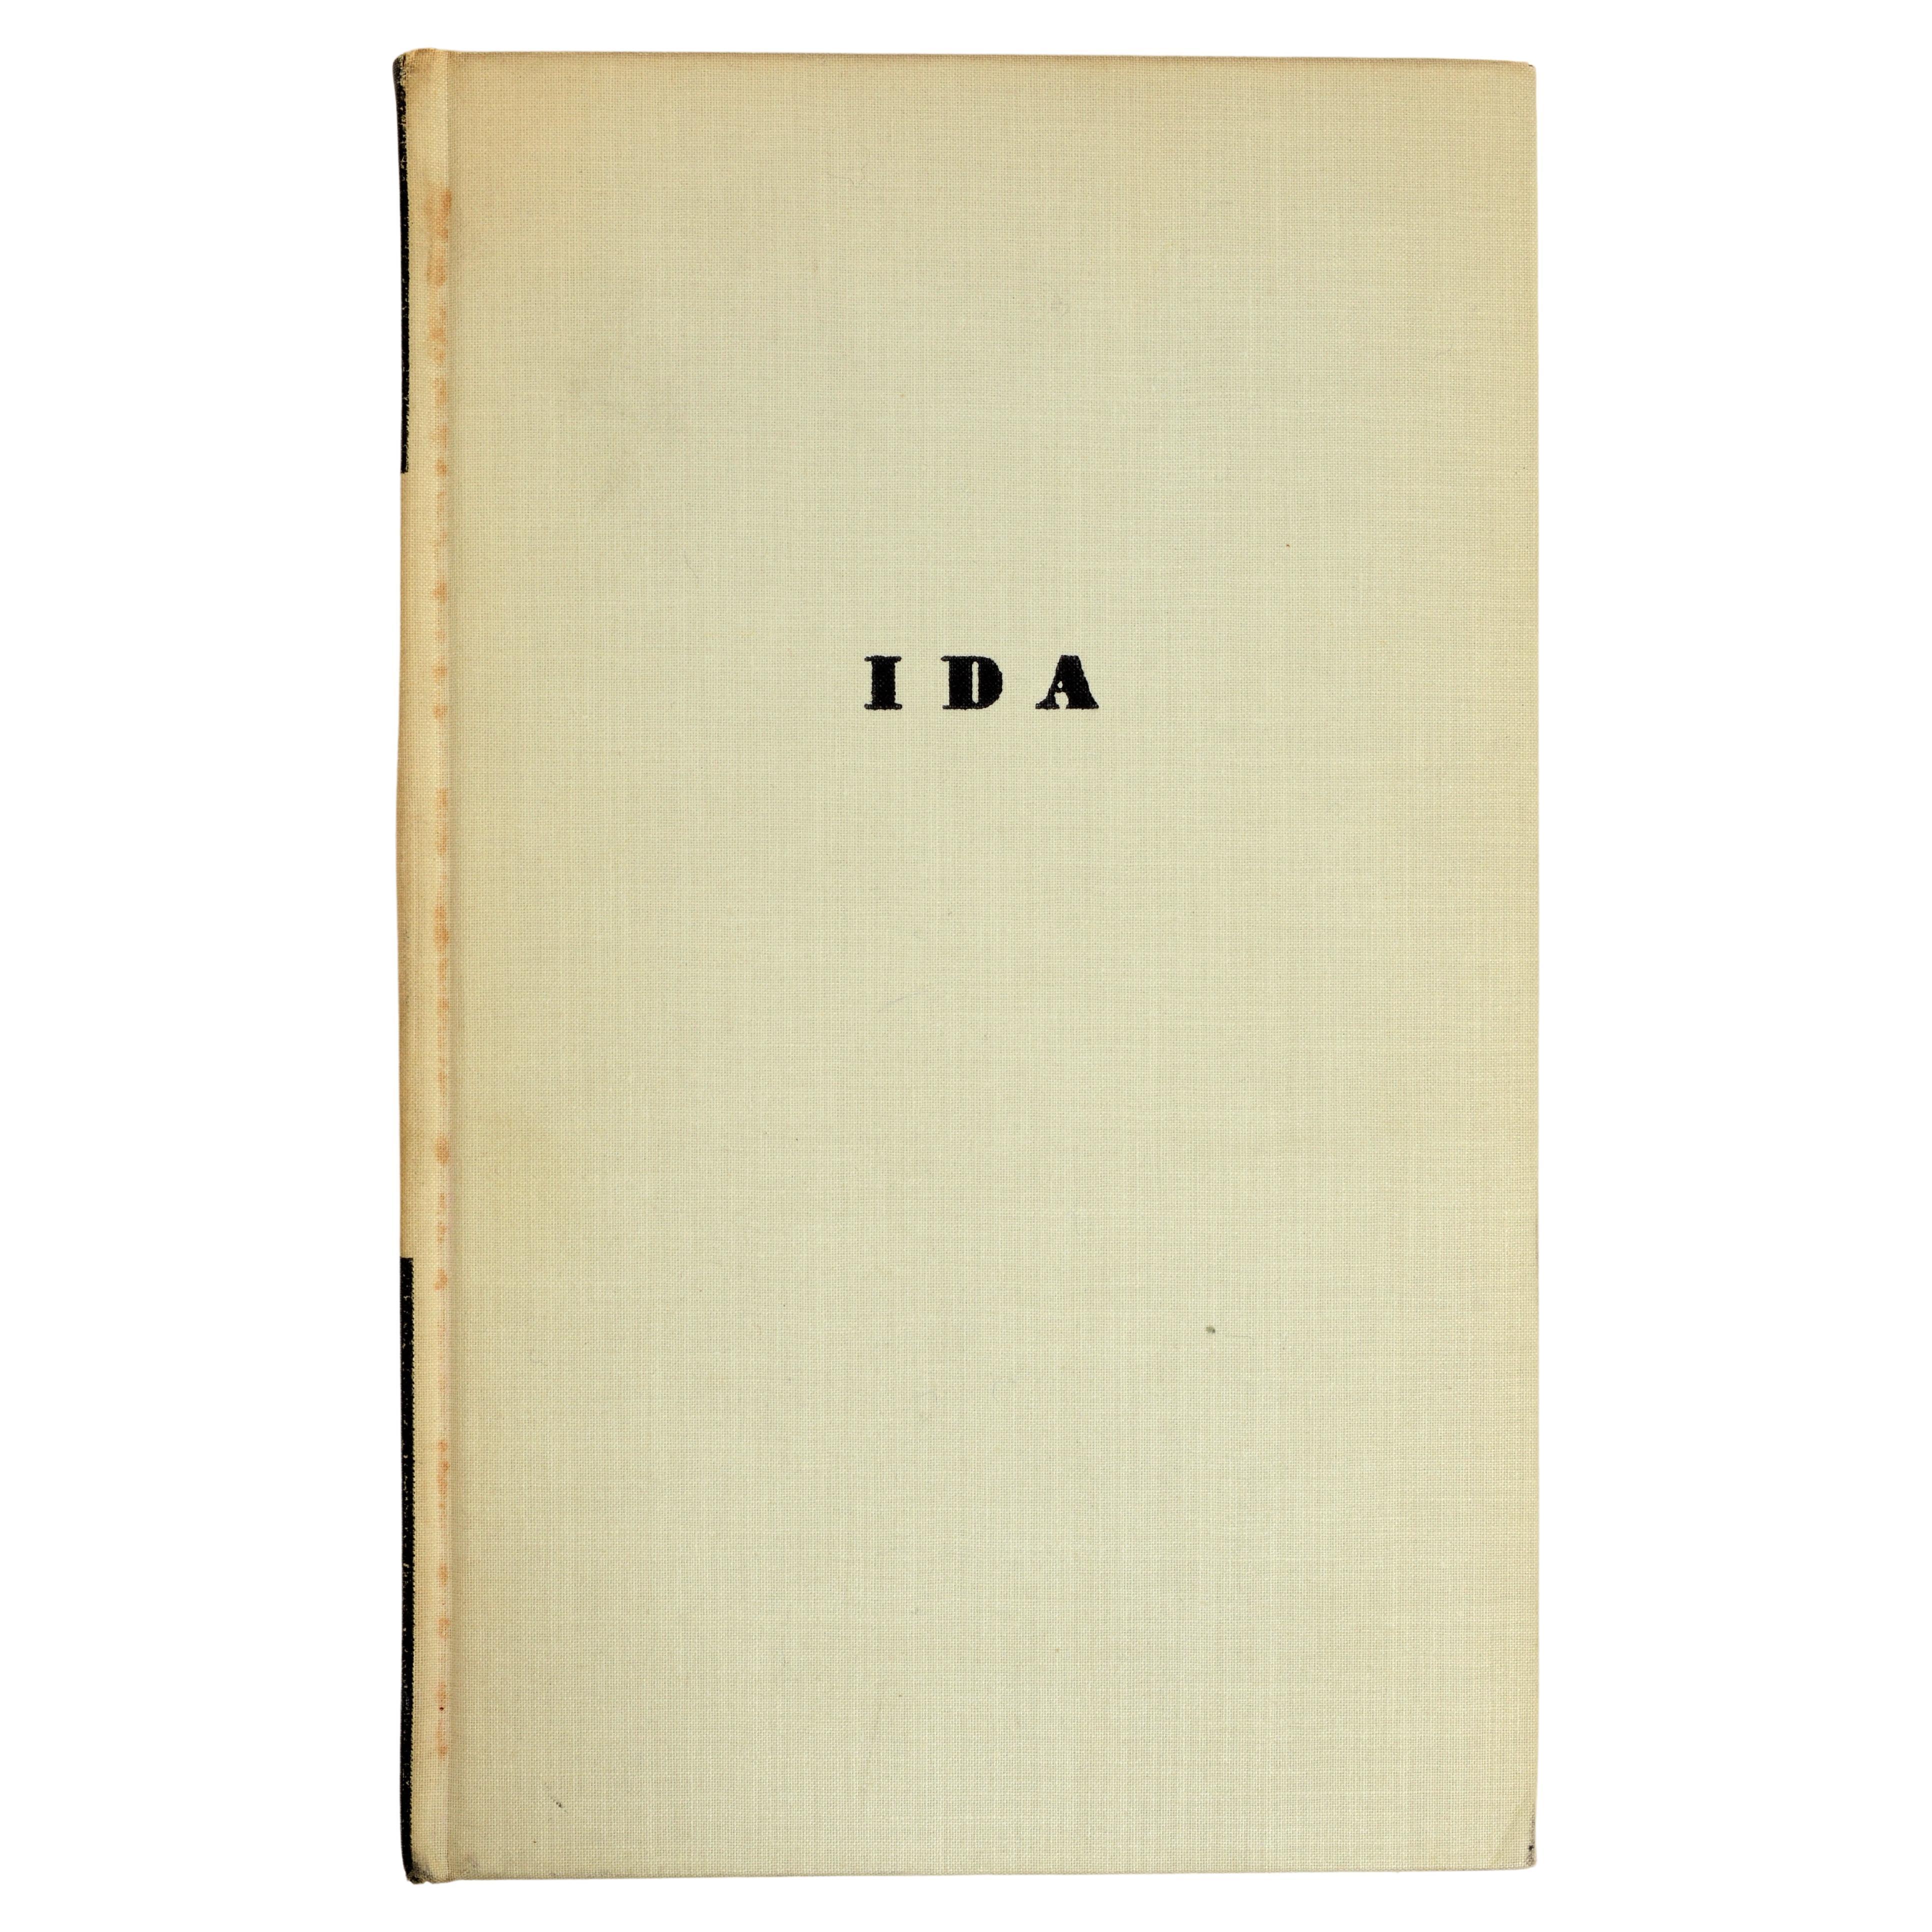 Ida Ida, A Novel von Gertrude Stein, vom 1. Jh., herausgegeben